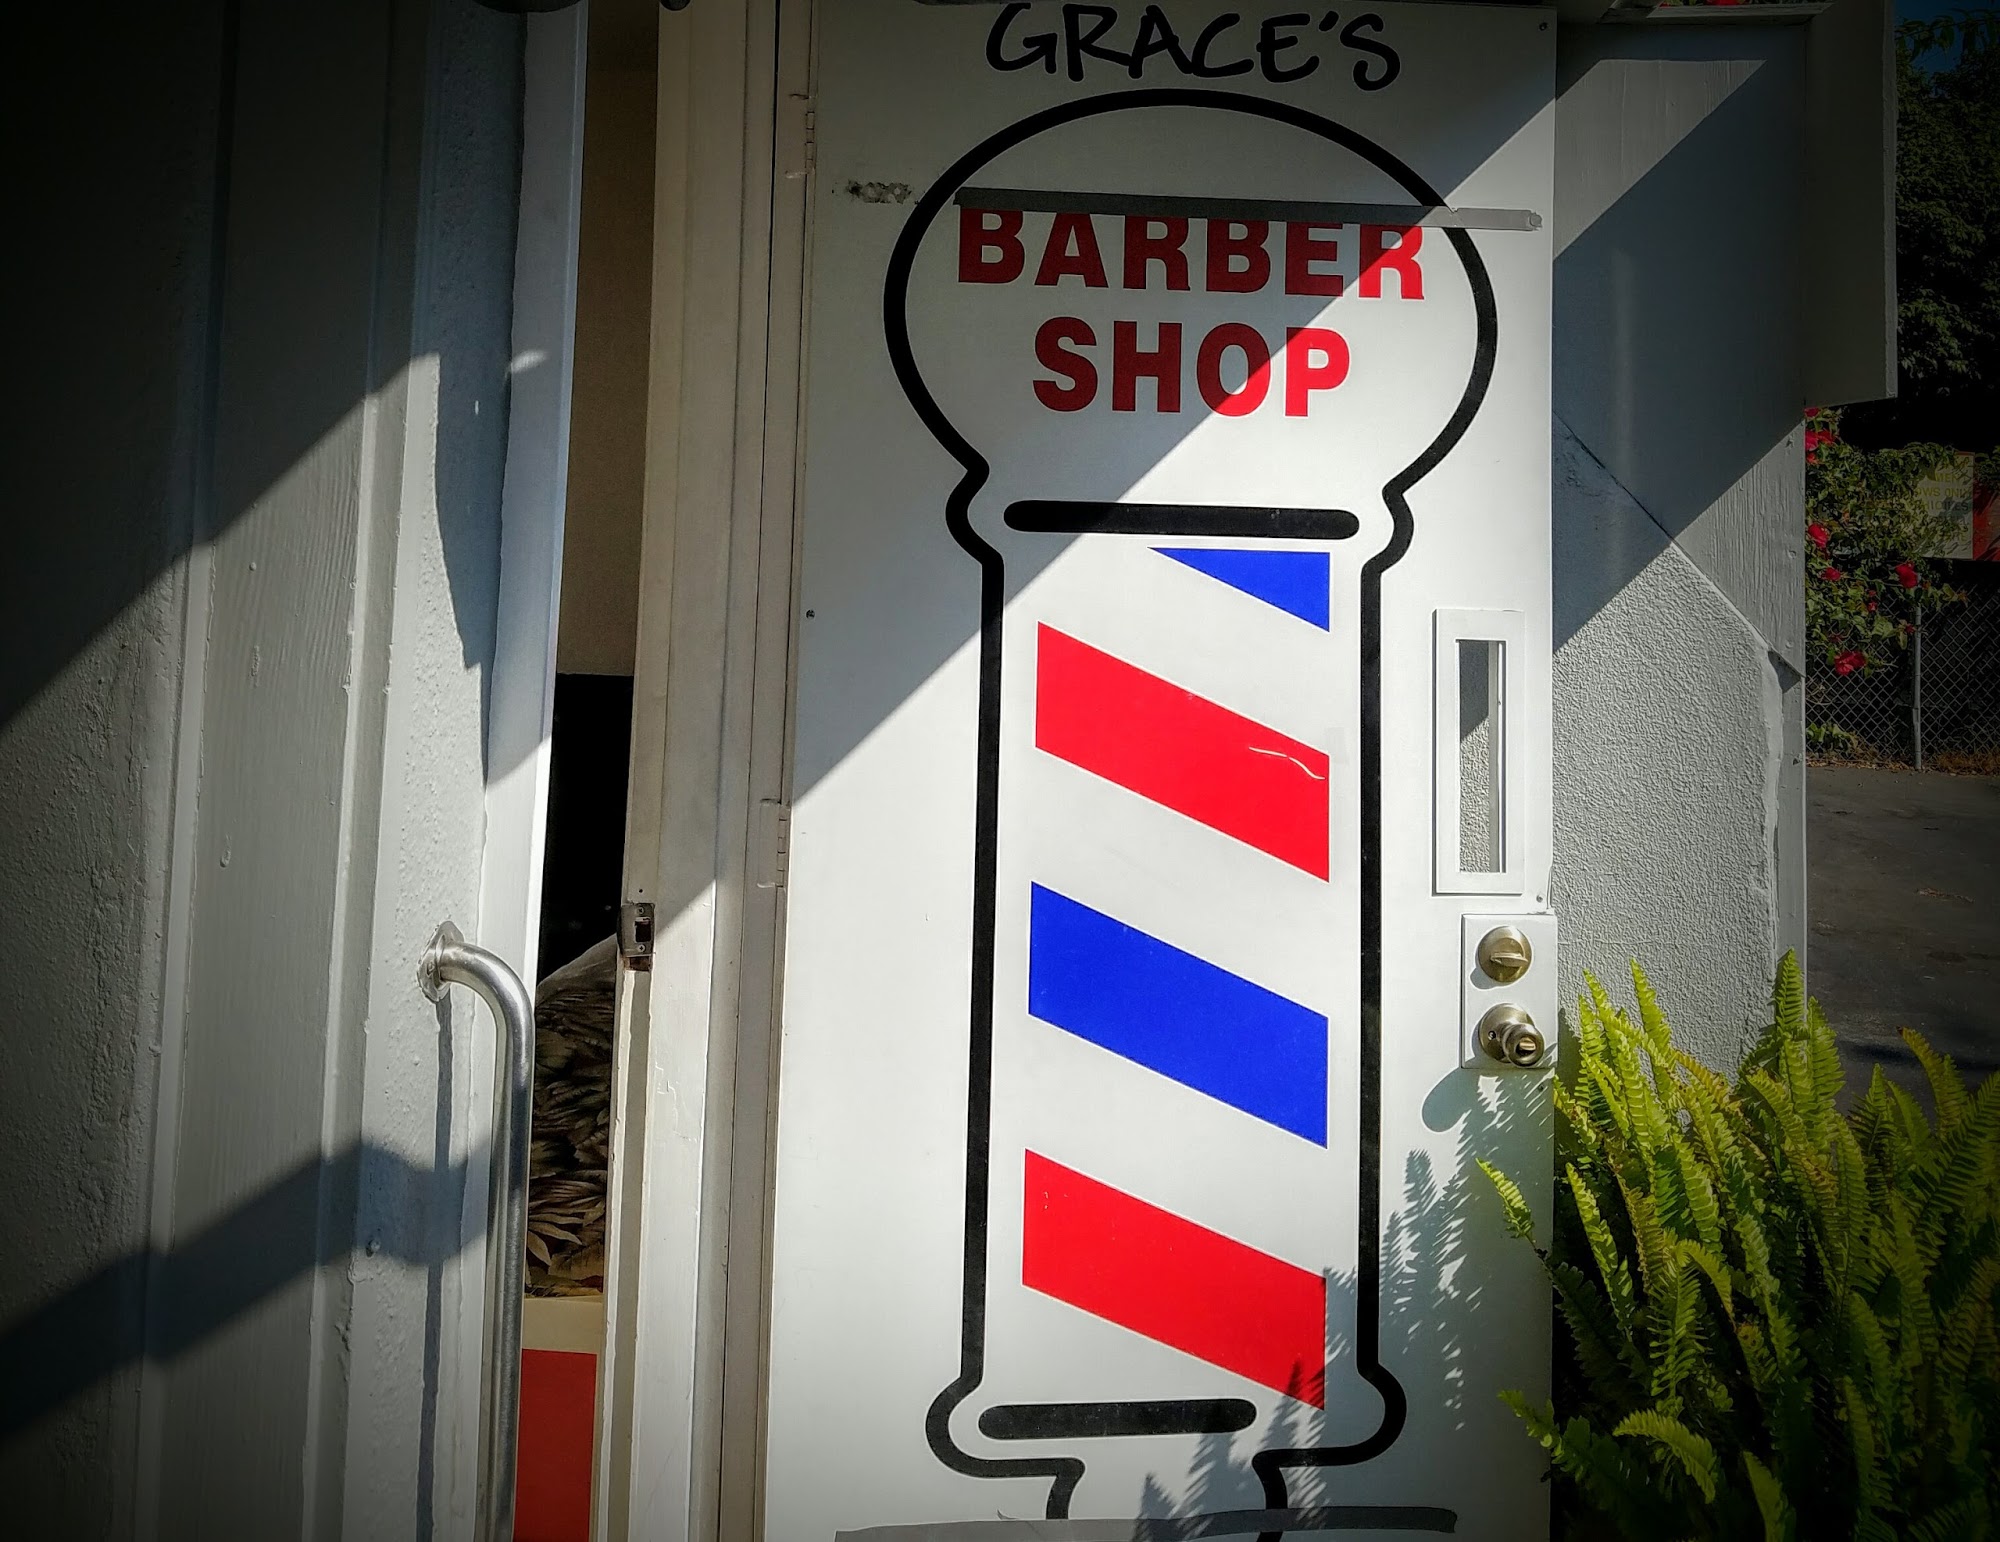 Grace's Barber Shop